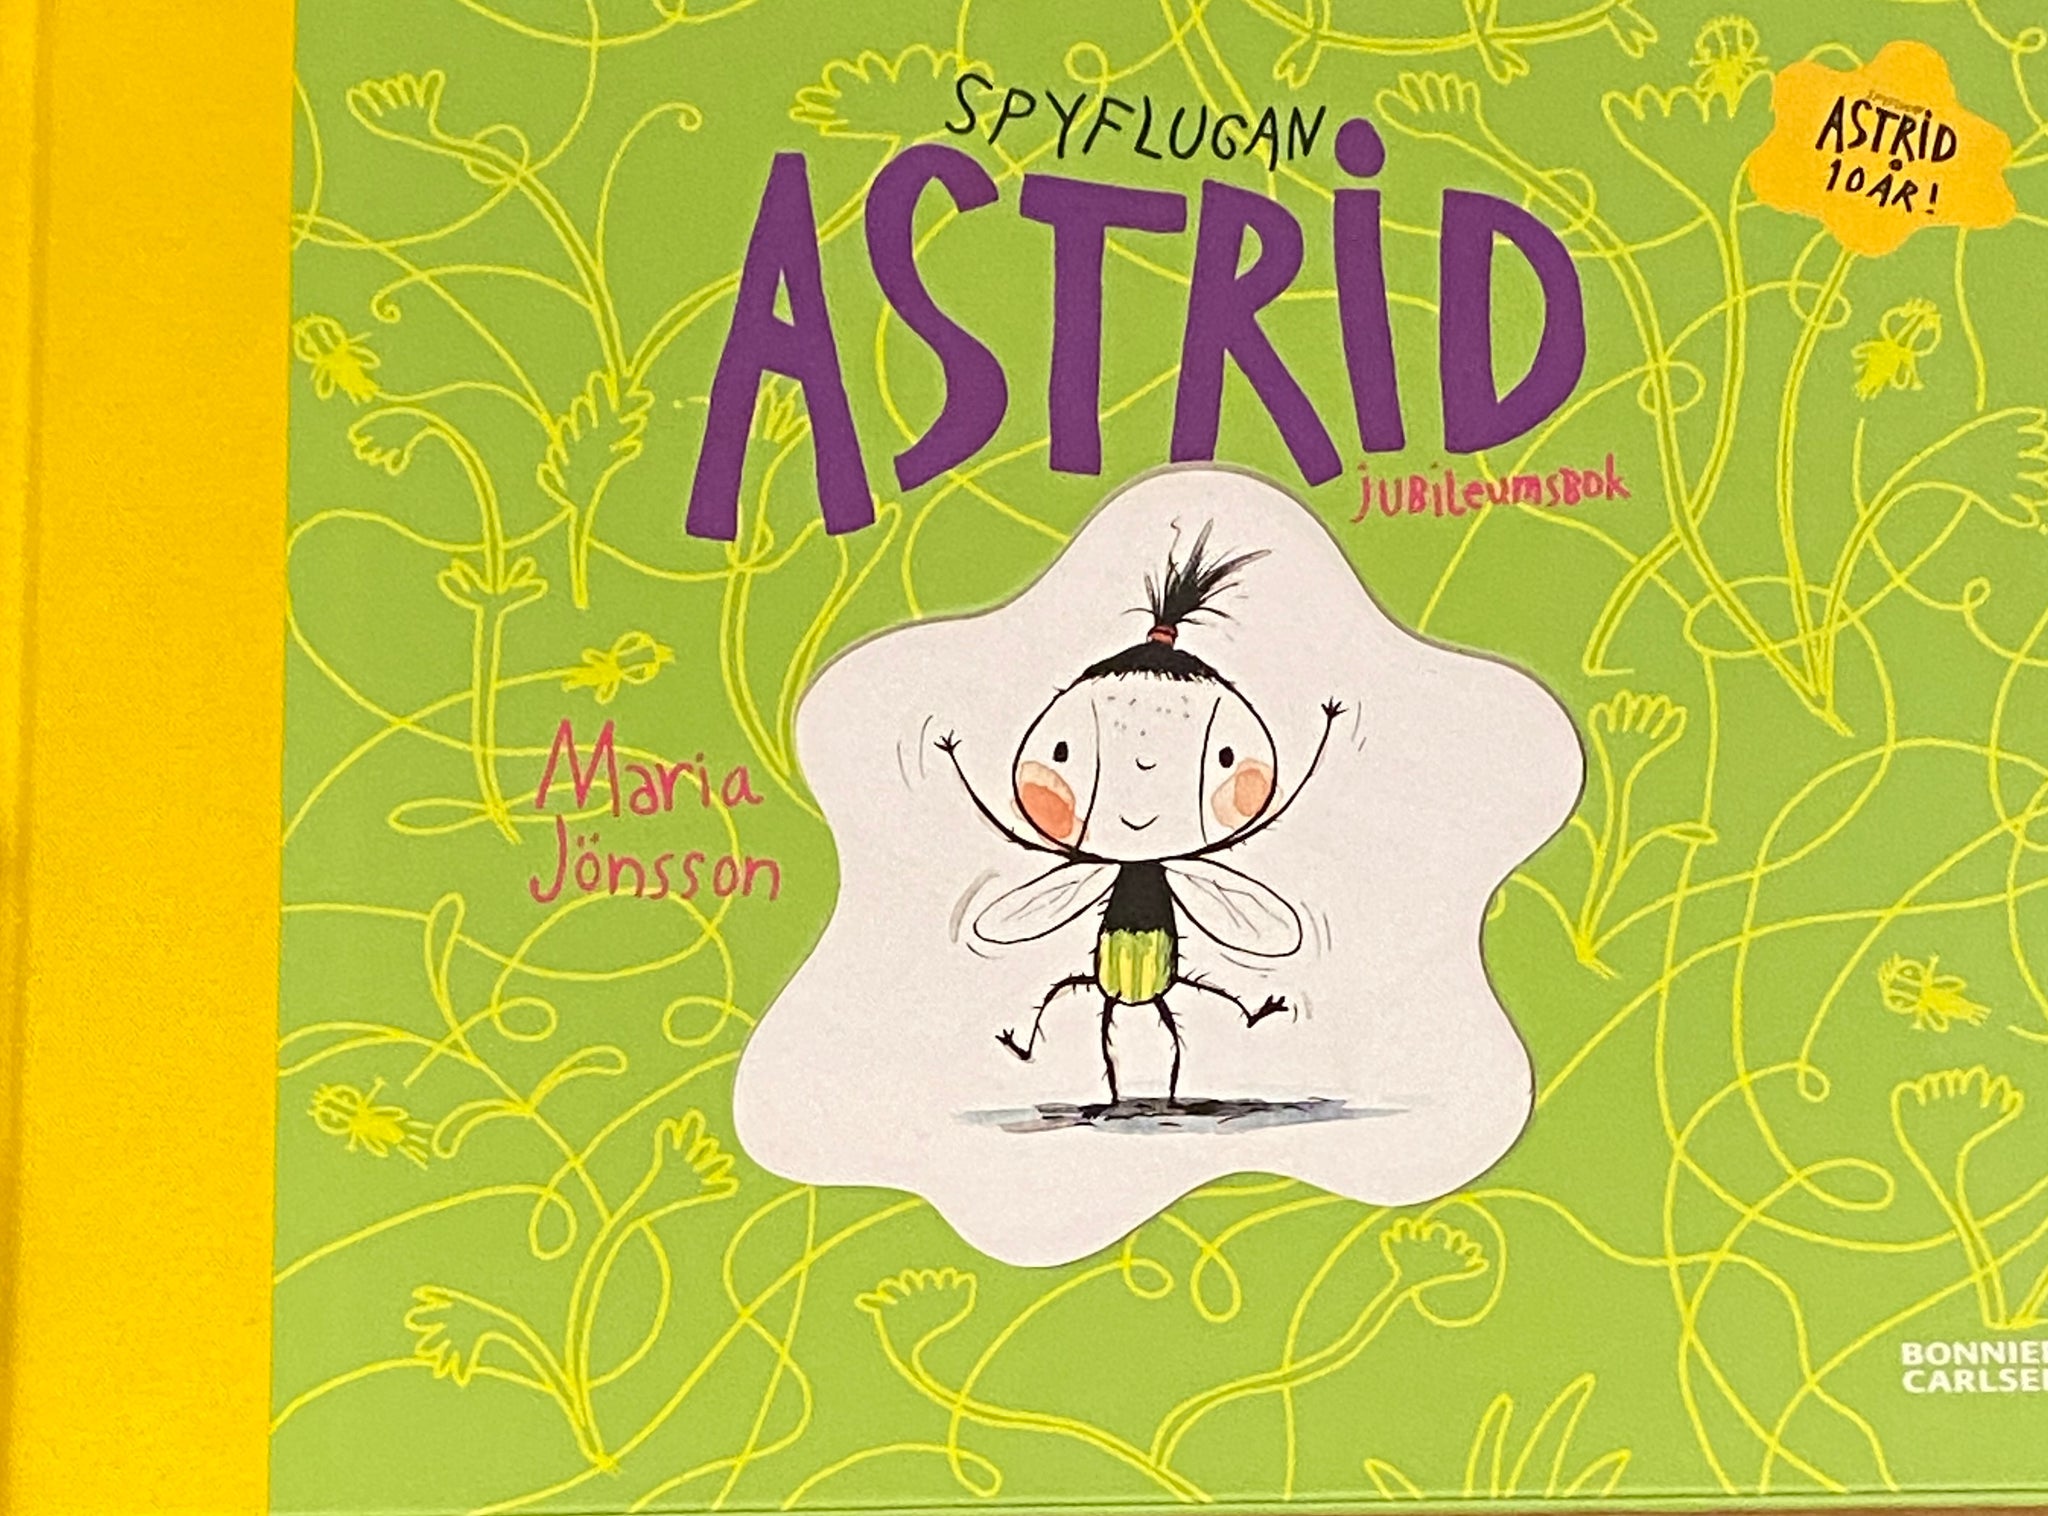 Spyflugan Astrid